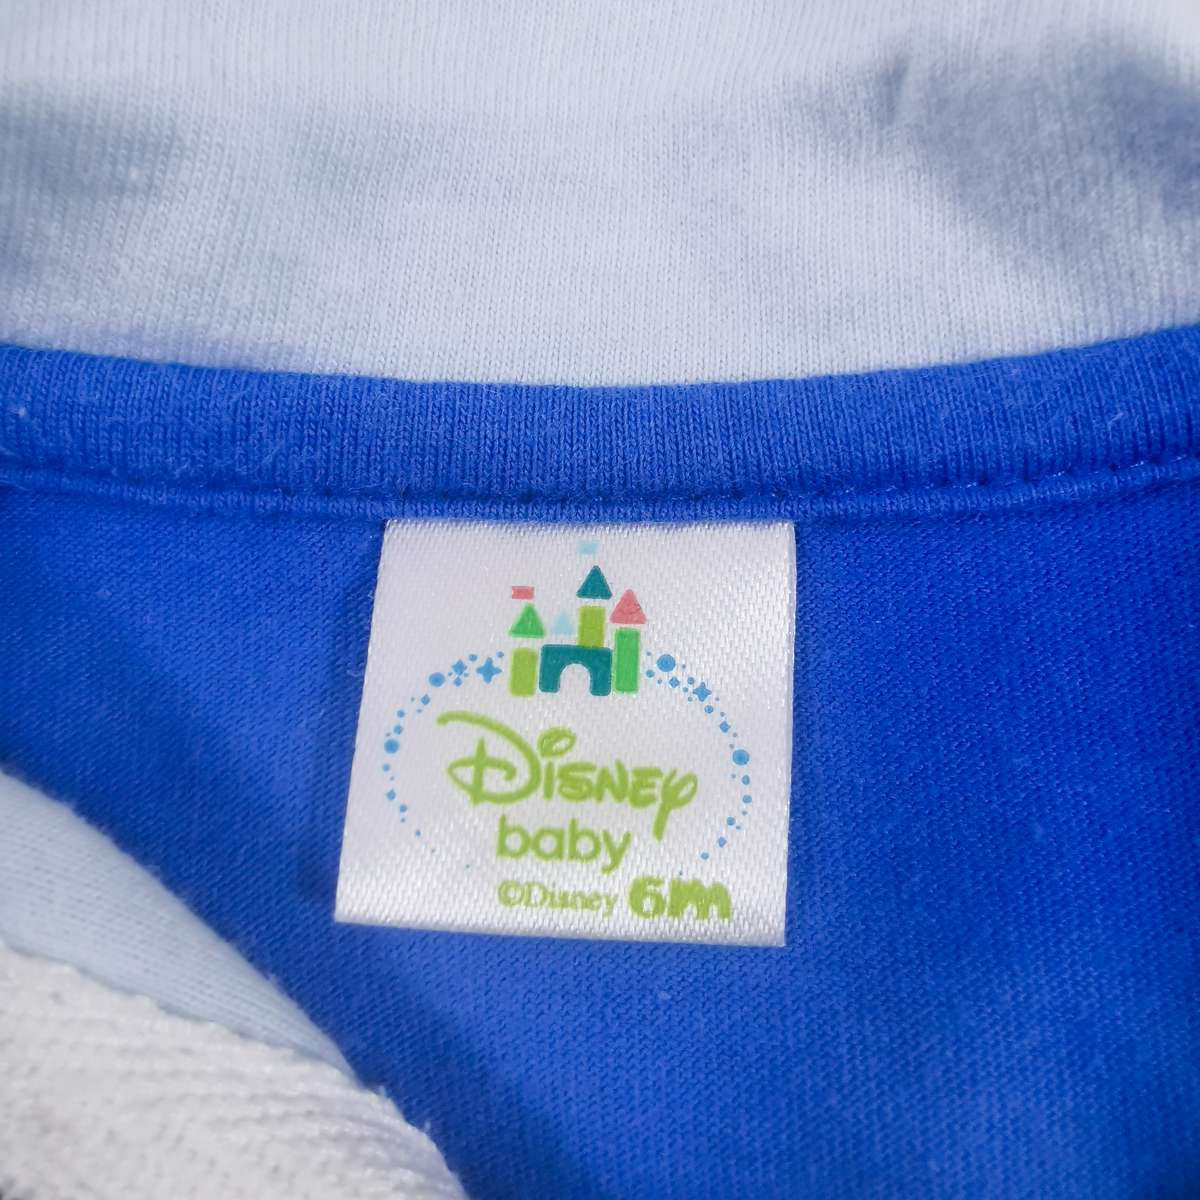 Disney baby ชุดหมีแขนสั้นเสื้อสีฟ้ากางเกงสีขาว 6m 